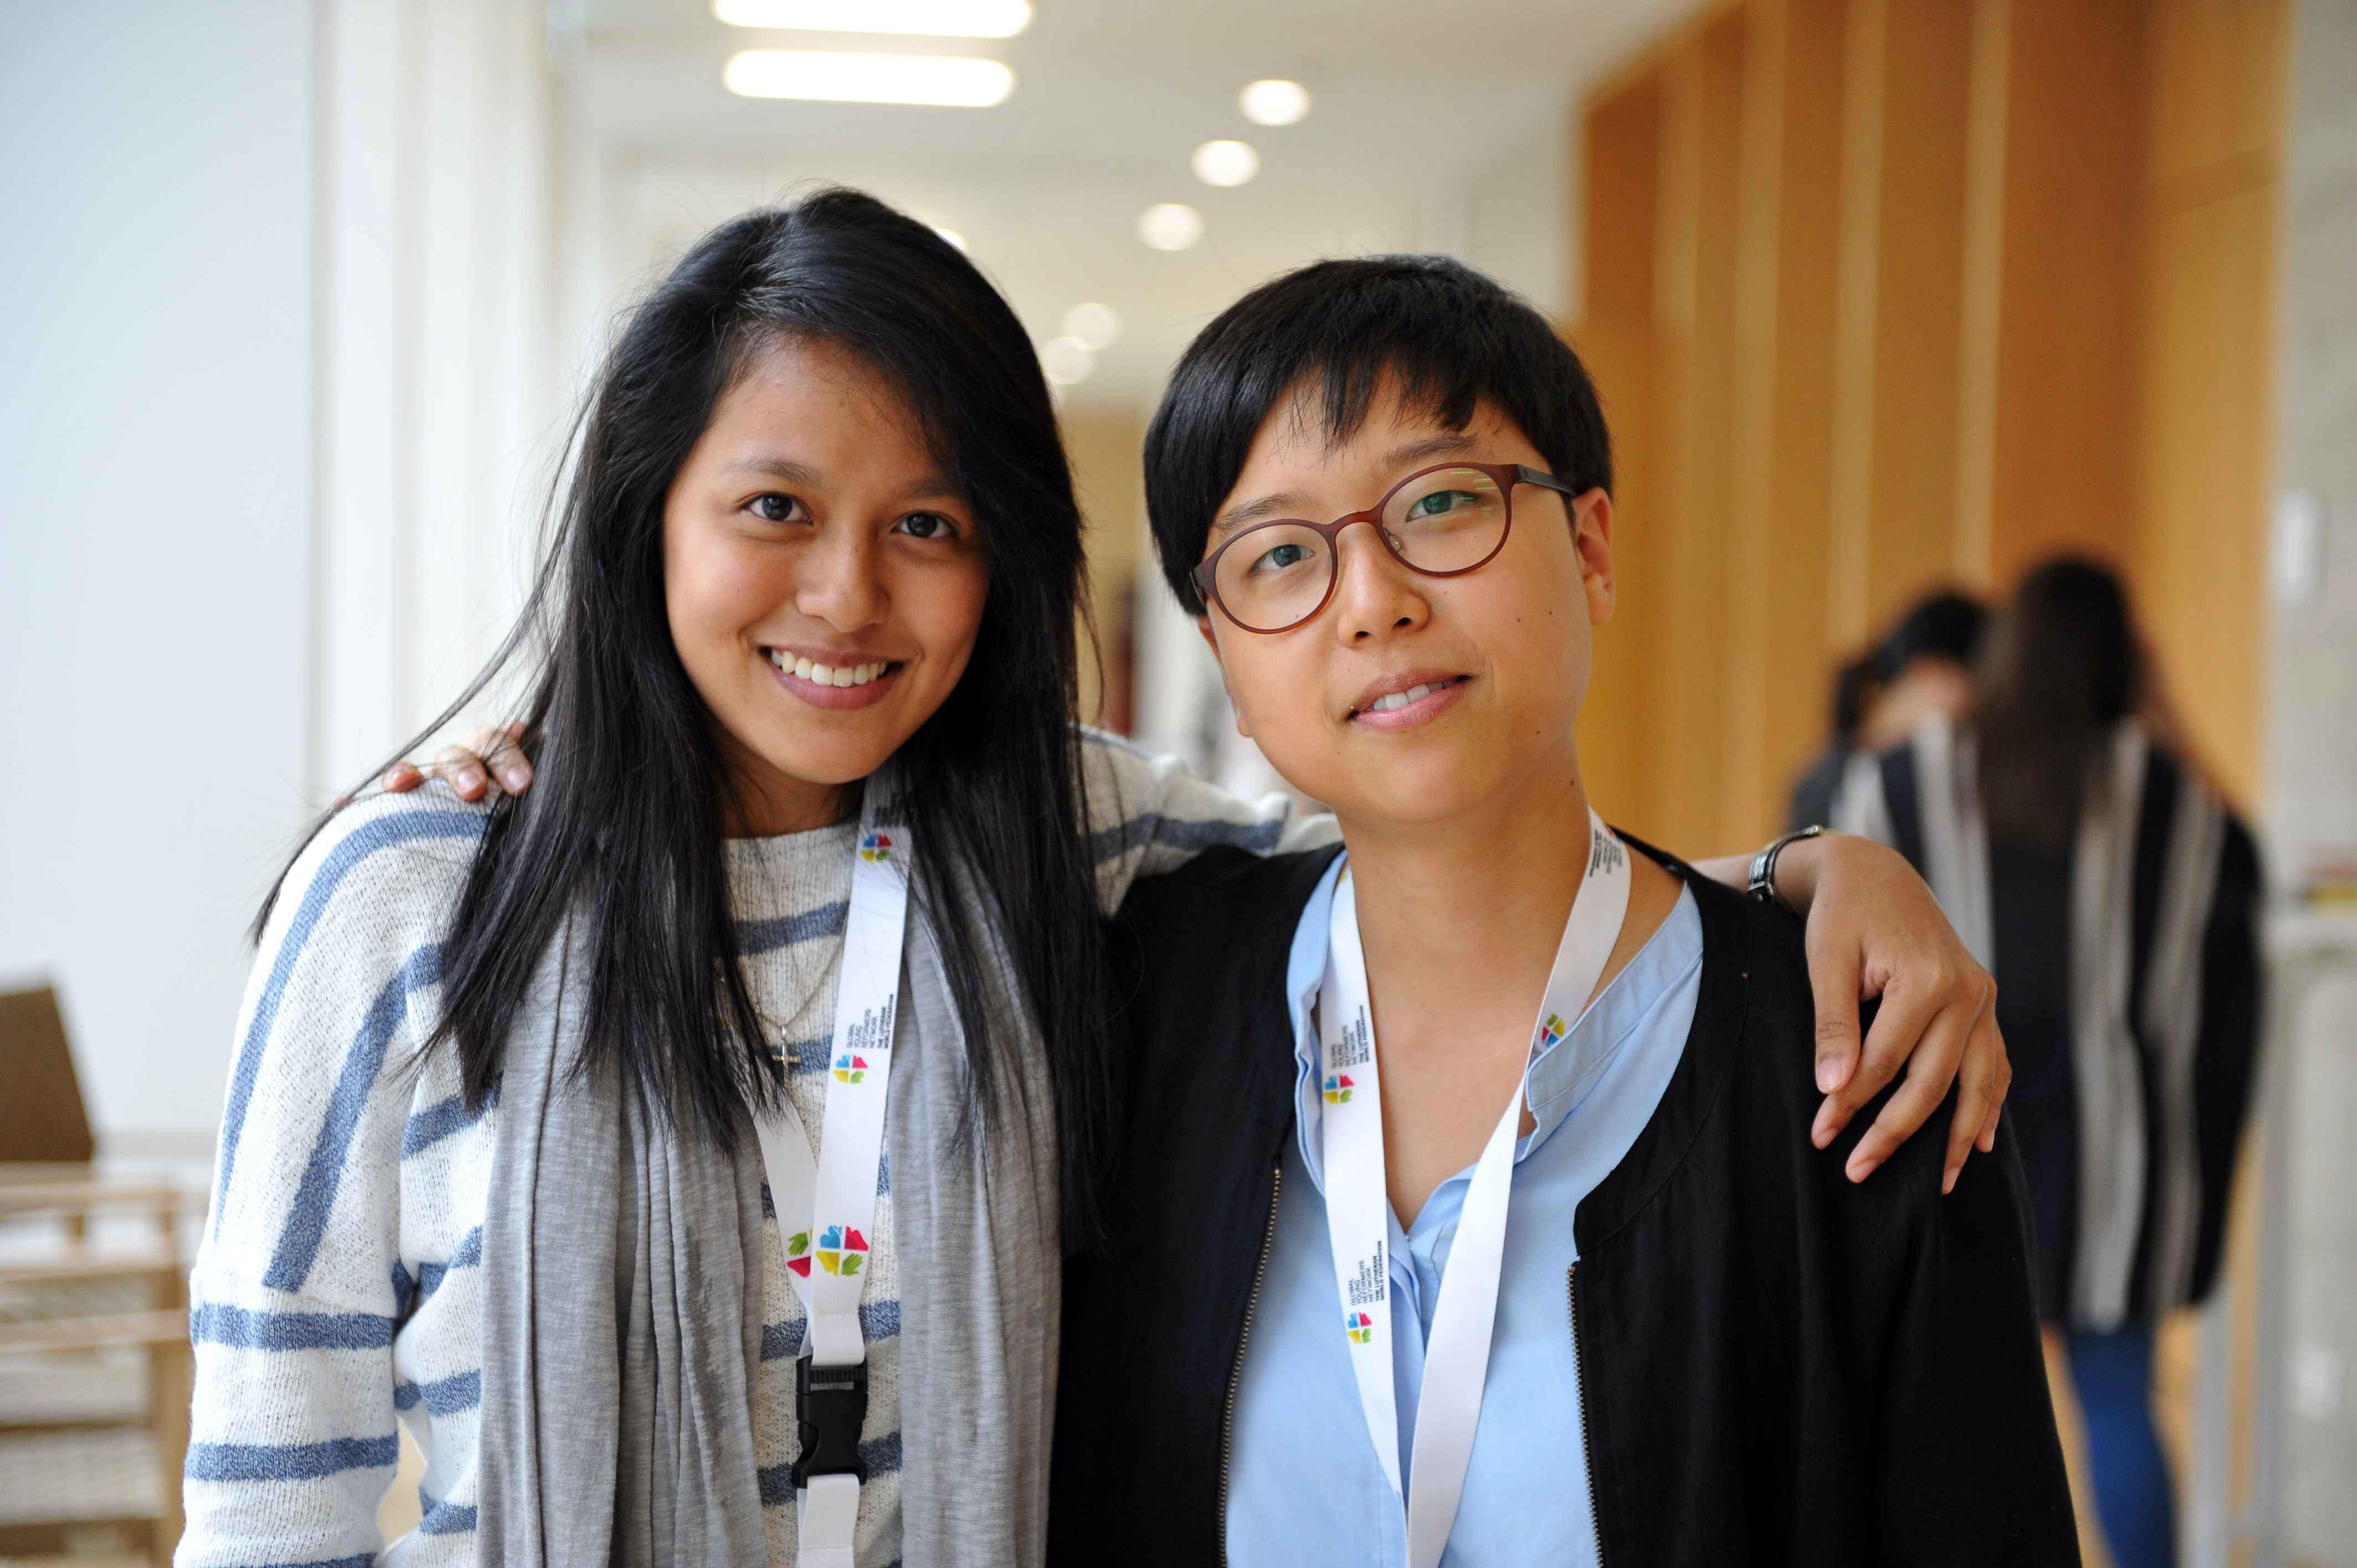 Die LWB-Vizepräsidentin für die Region Asien, Eun-hae Kwon (re.) mit Sumita Chin aus Malaysia. Kwon motiviert das kontinuierliche Zeugnis der LutheranerInnen in ihrem Amt. Foto: LWB/M. Renaux